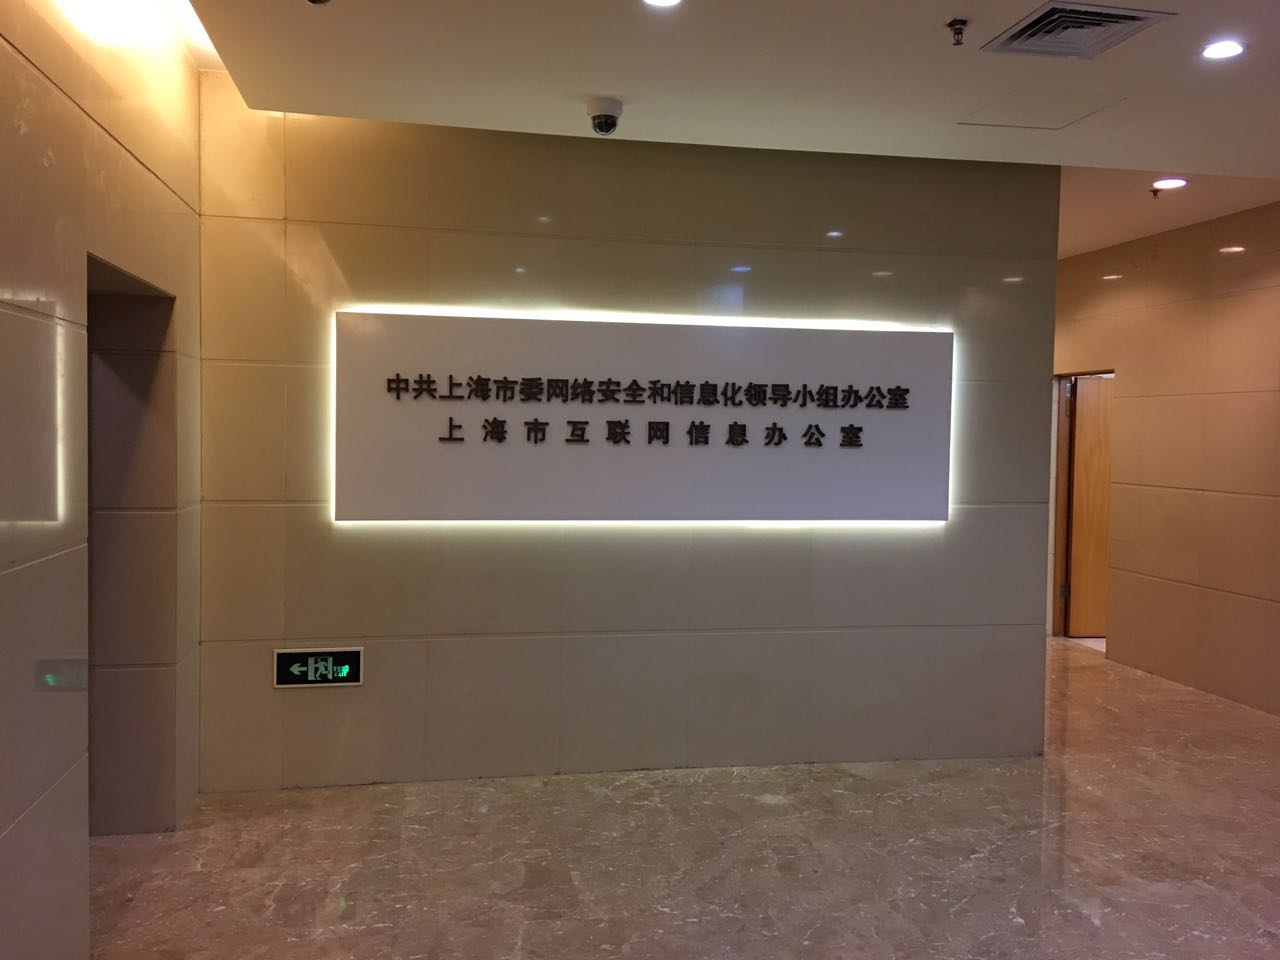 上海市互联网信息办公室(图1)